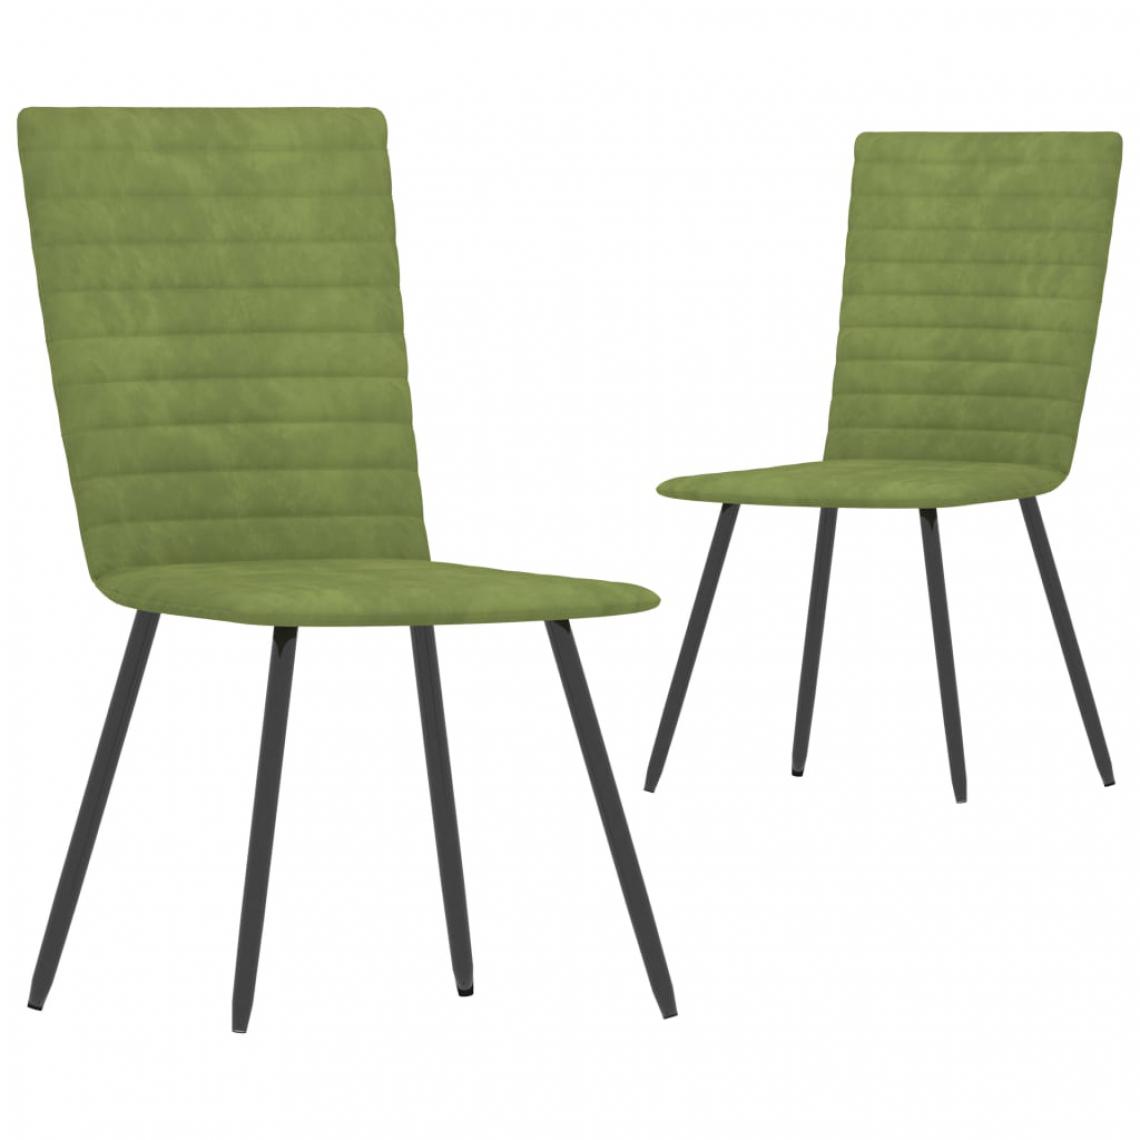 Icaverne - Magnifique Fauteuils et chaises categorie Londres Chaises de salle à manger 2 pcs Vert Velours - Chaises